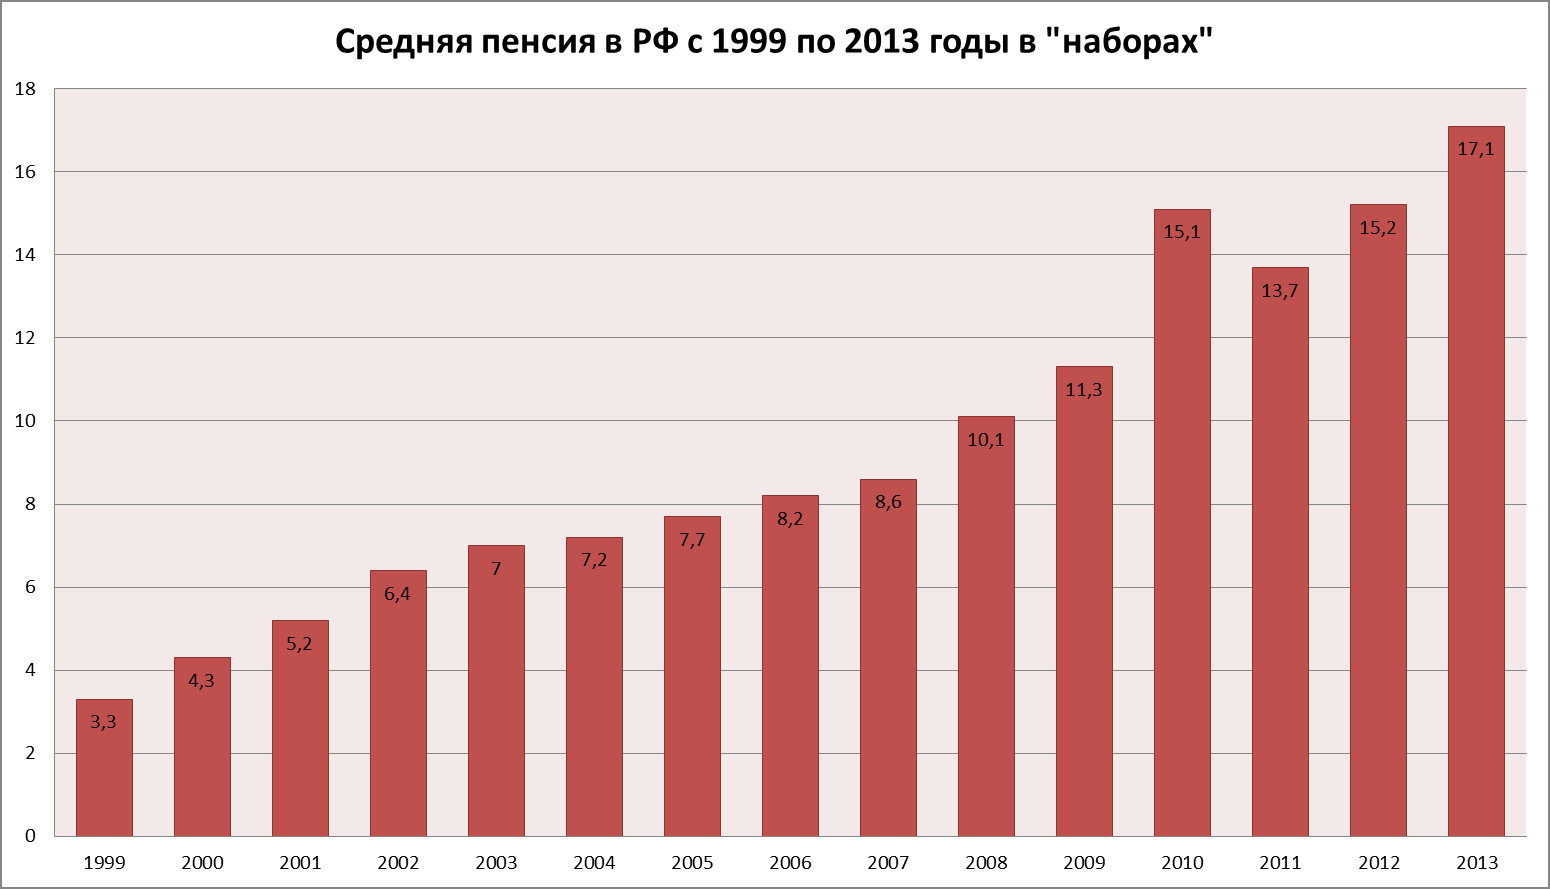 Пенсия в 2000 году в россии. Размер пенсии в 1999 году в России. Средний размер пенсии. Средняя пенсия в России график. Размер средней пенсии по годам.